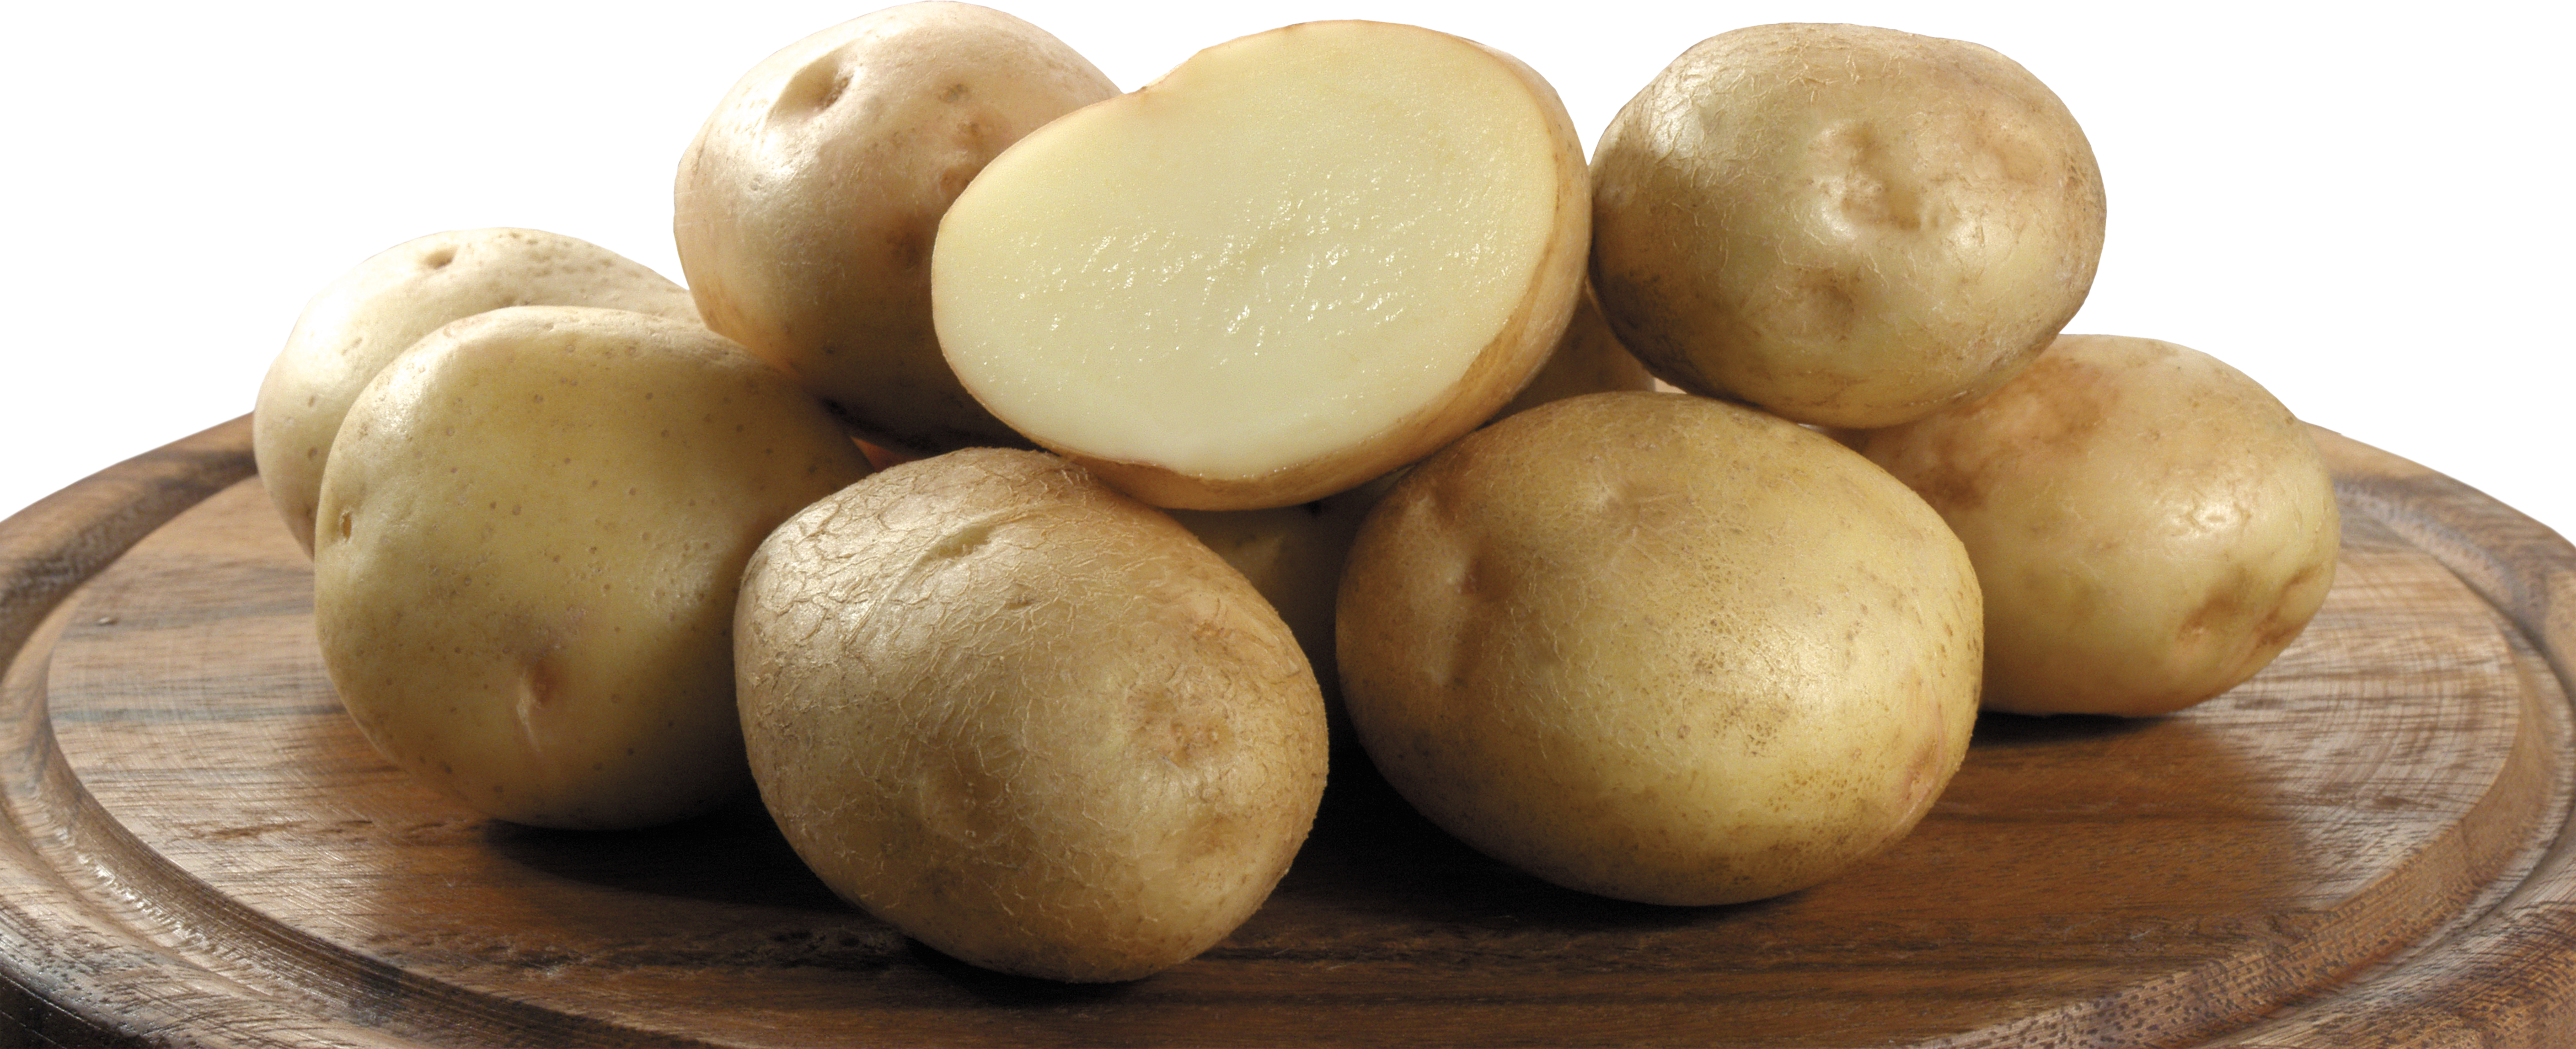 Kartoffeln auf dem Teller